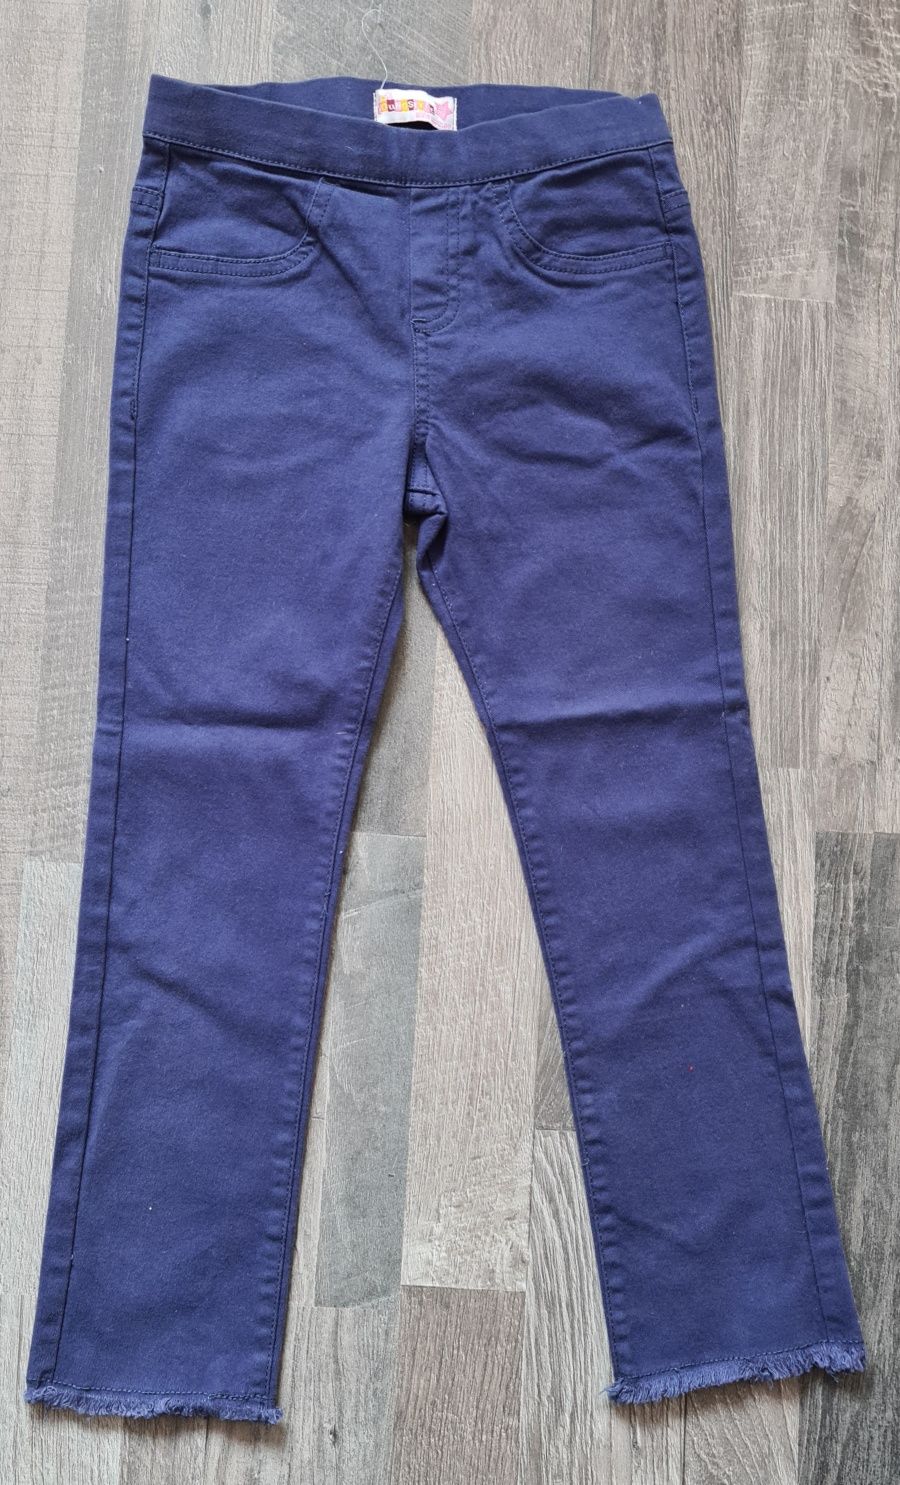 Tregginsy spodnie z miękkiego jeansu fioletowe strzępione nogawki rozm